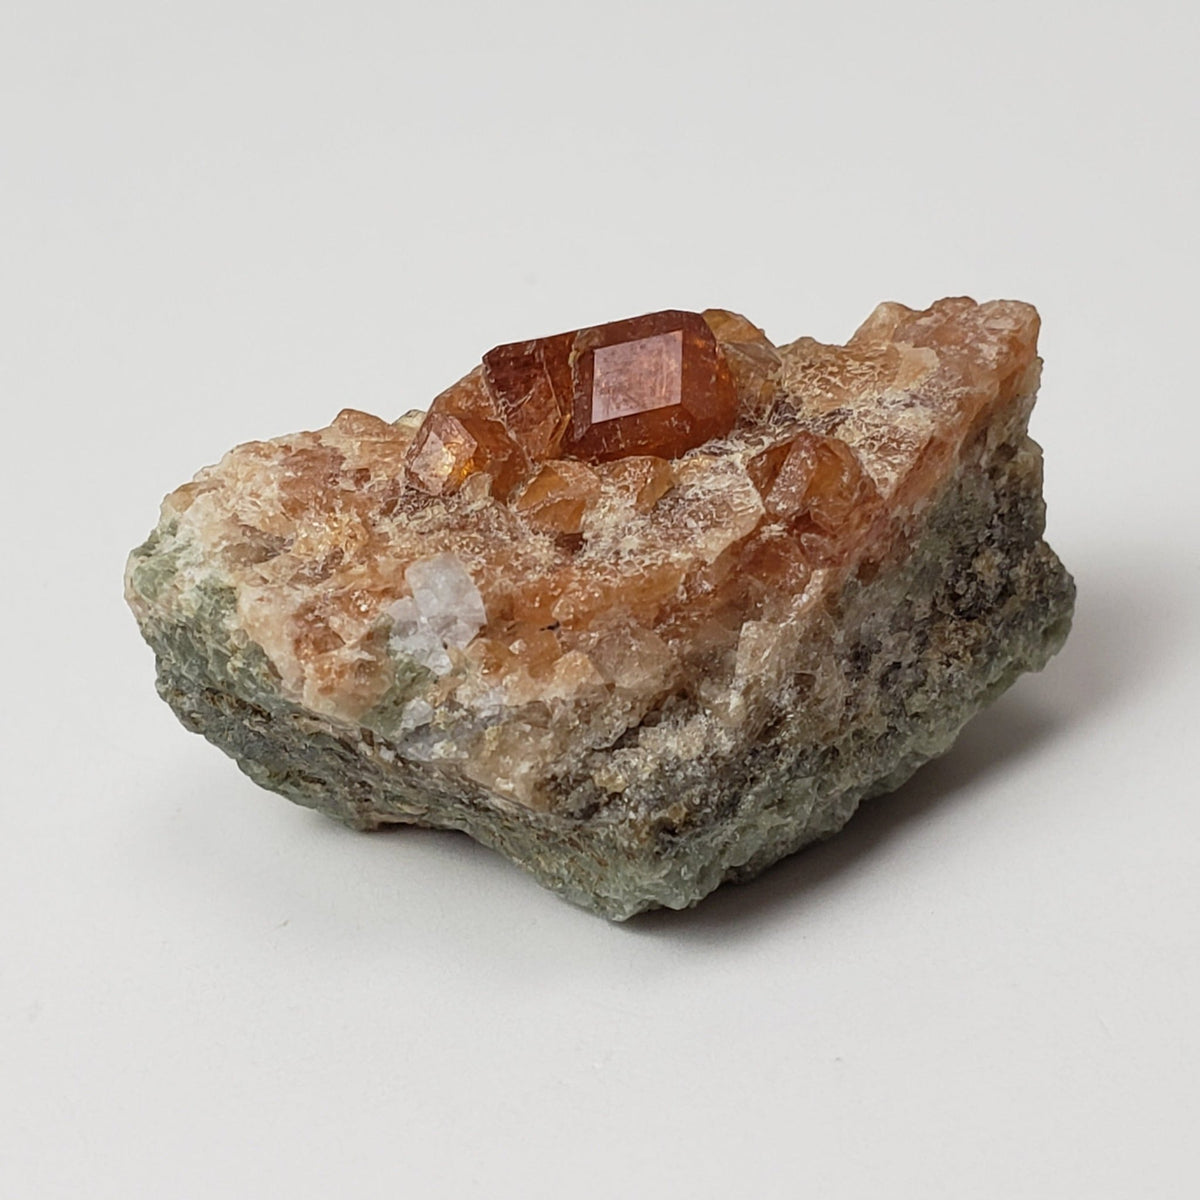 Grossular Hessonite Garnet | Perky Box Thumbnail Specimen | Eden Mills, VT USA